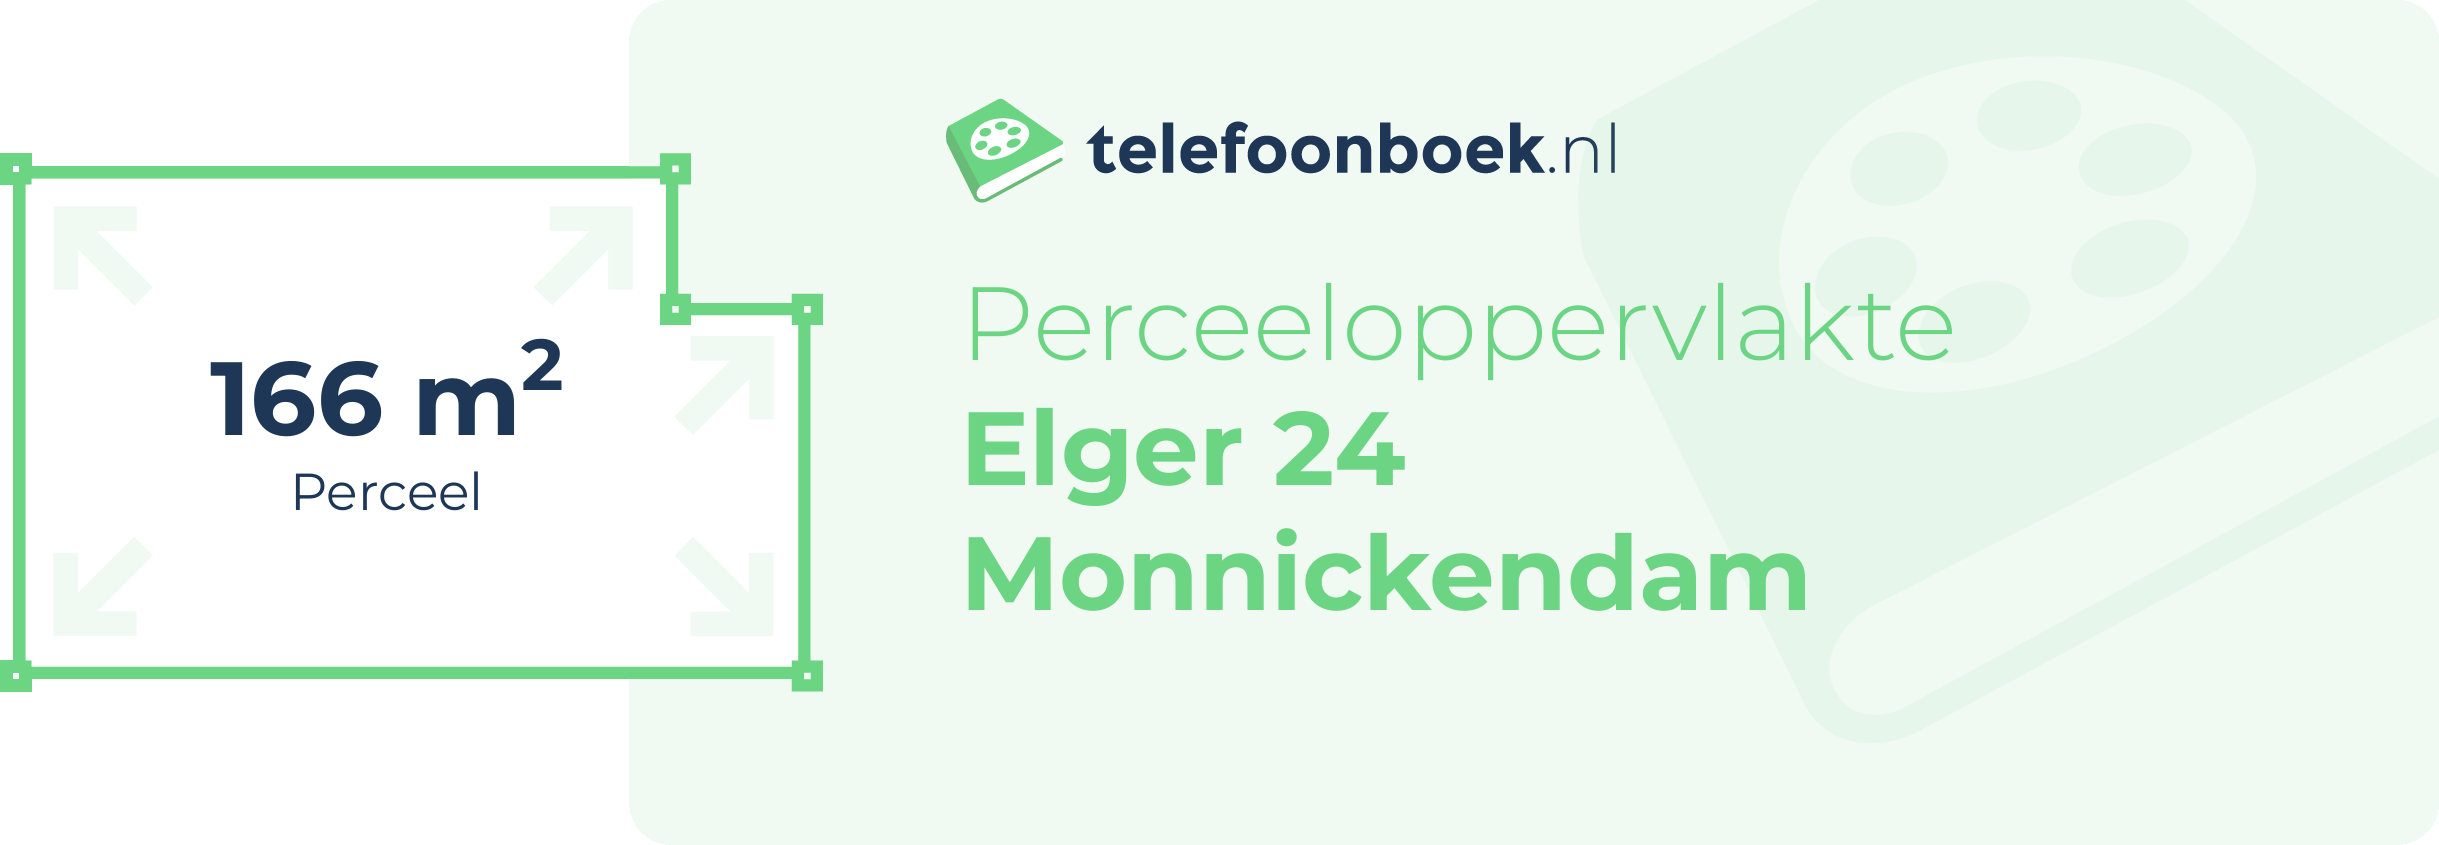 Perceeloppervlakte Elger 24 Monnickendam